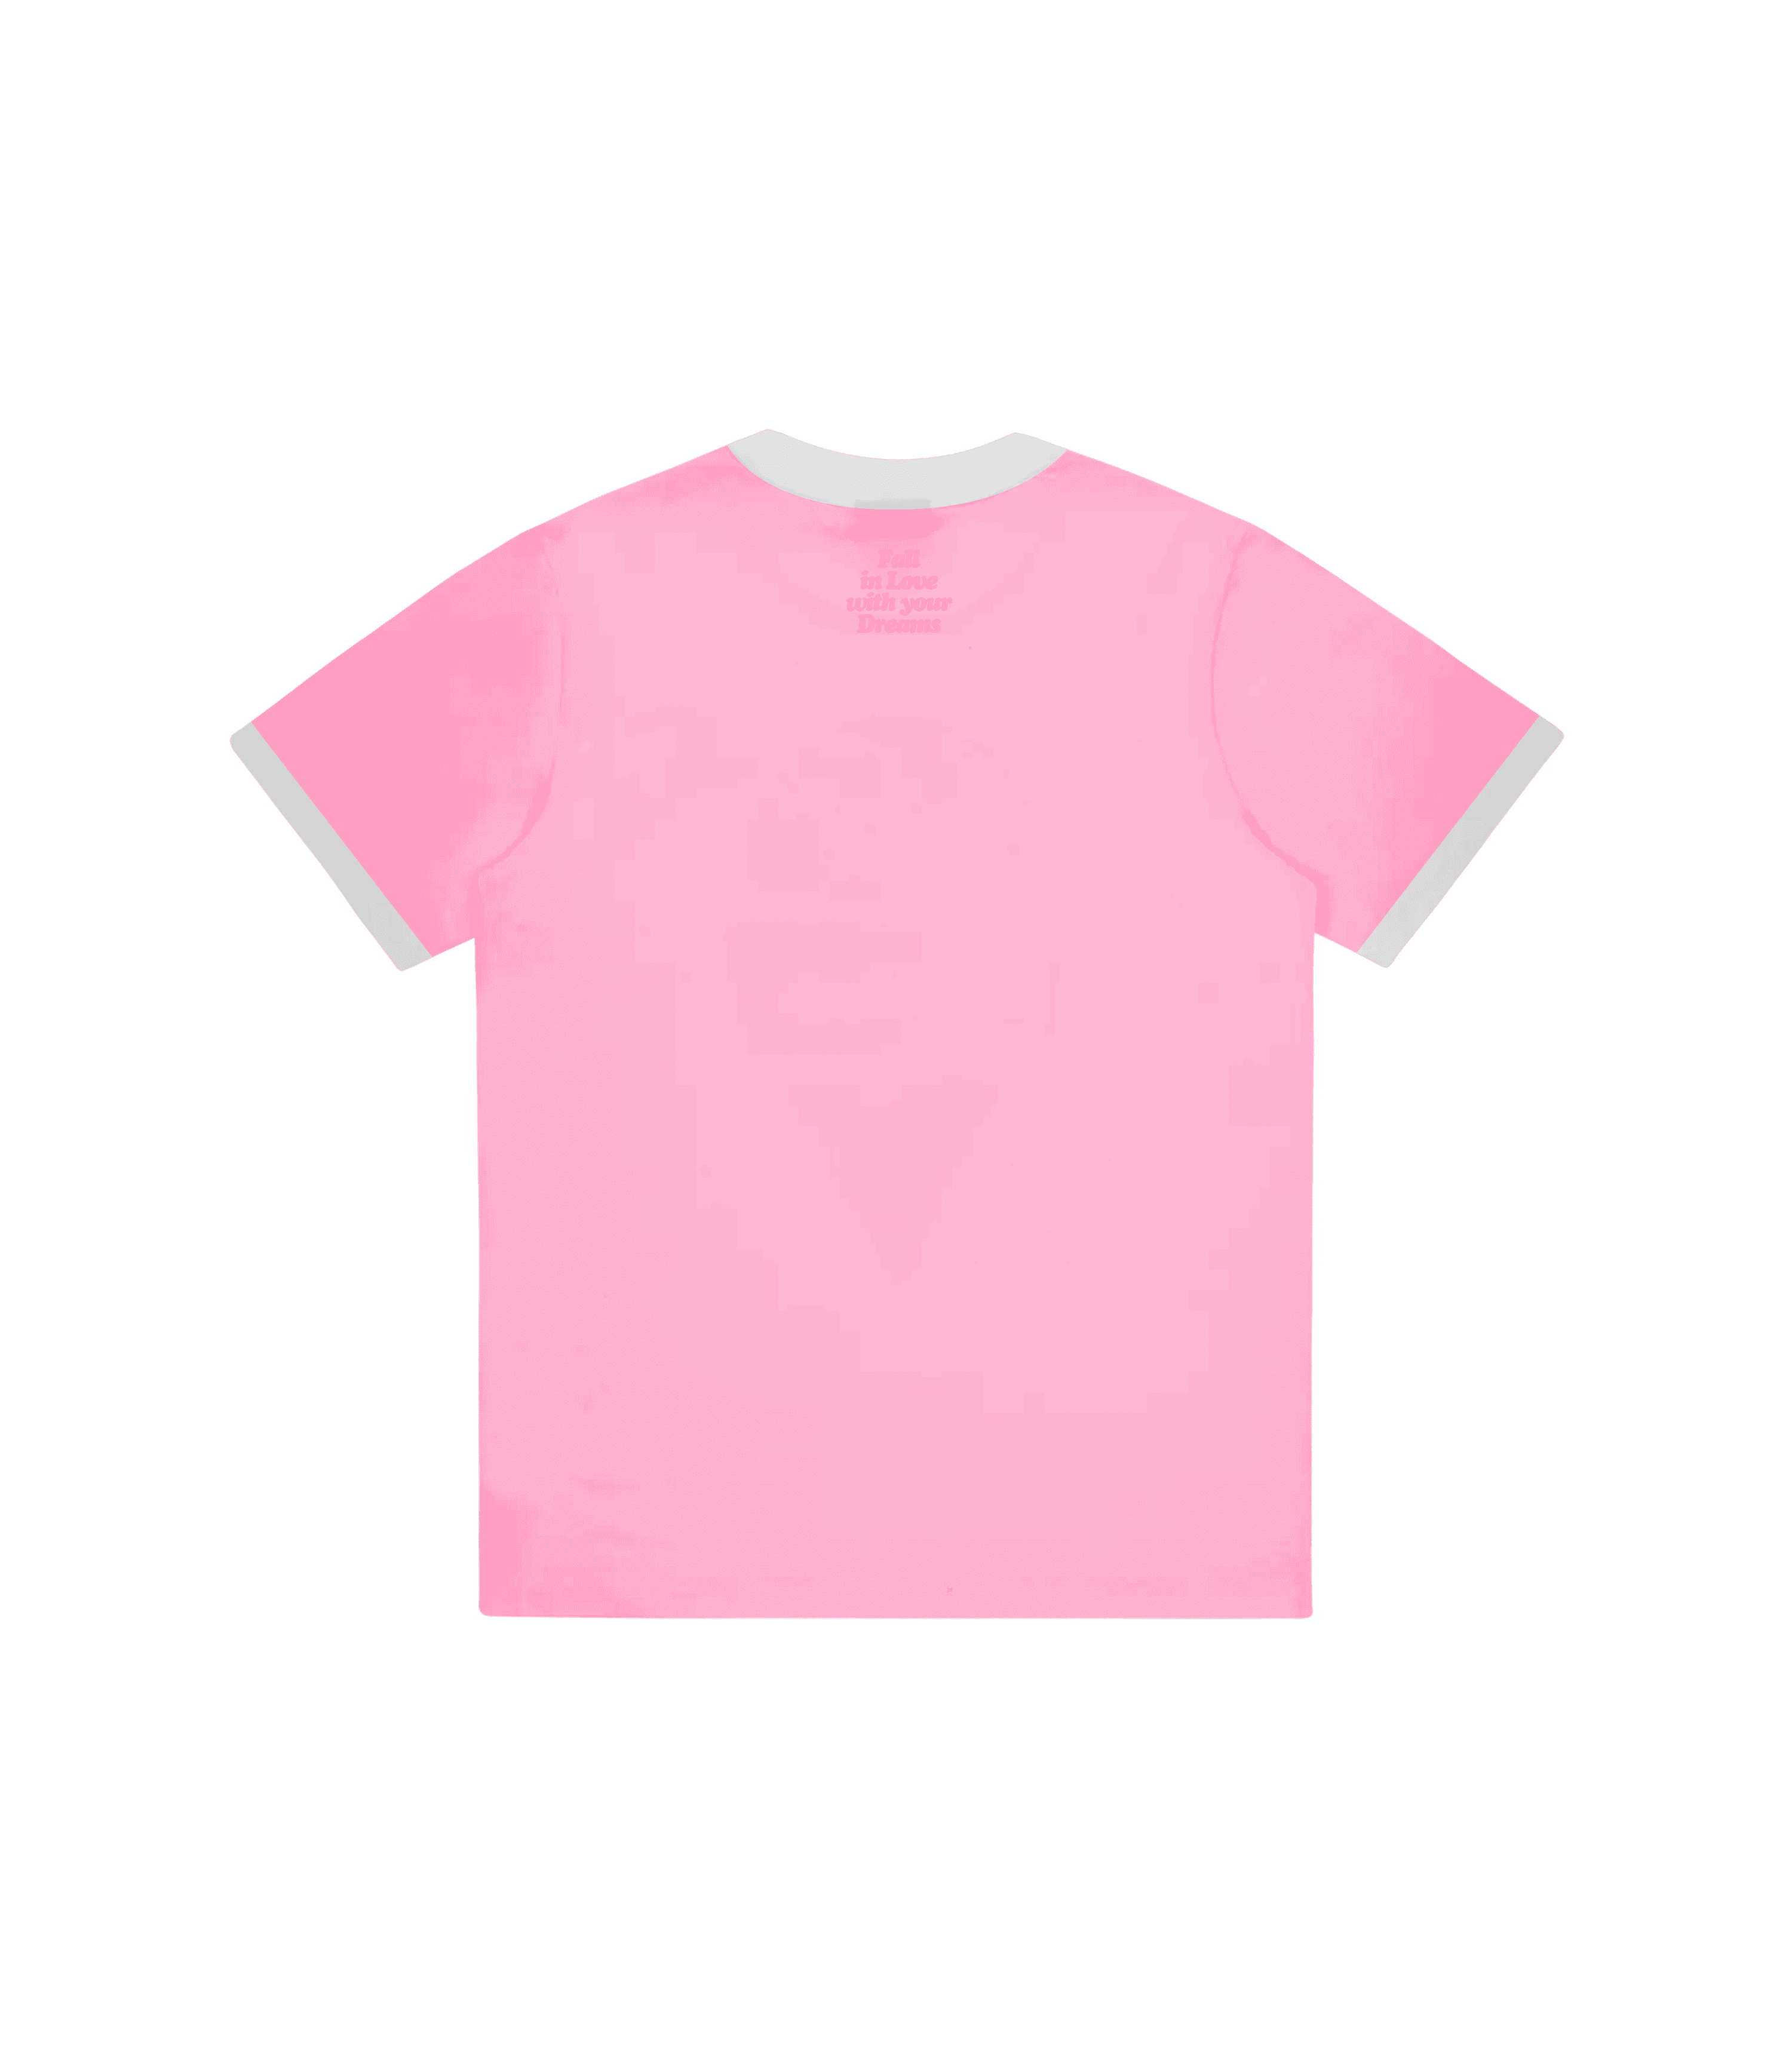 Zorro Stuff T-Shirts 90s FIT Pink Tee